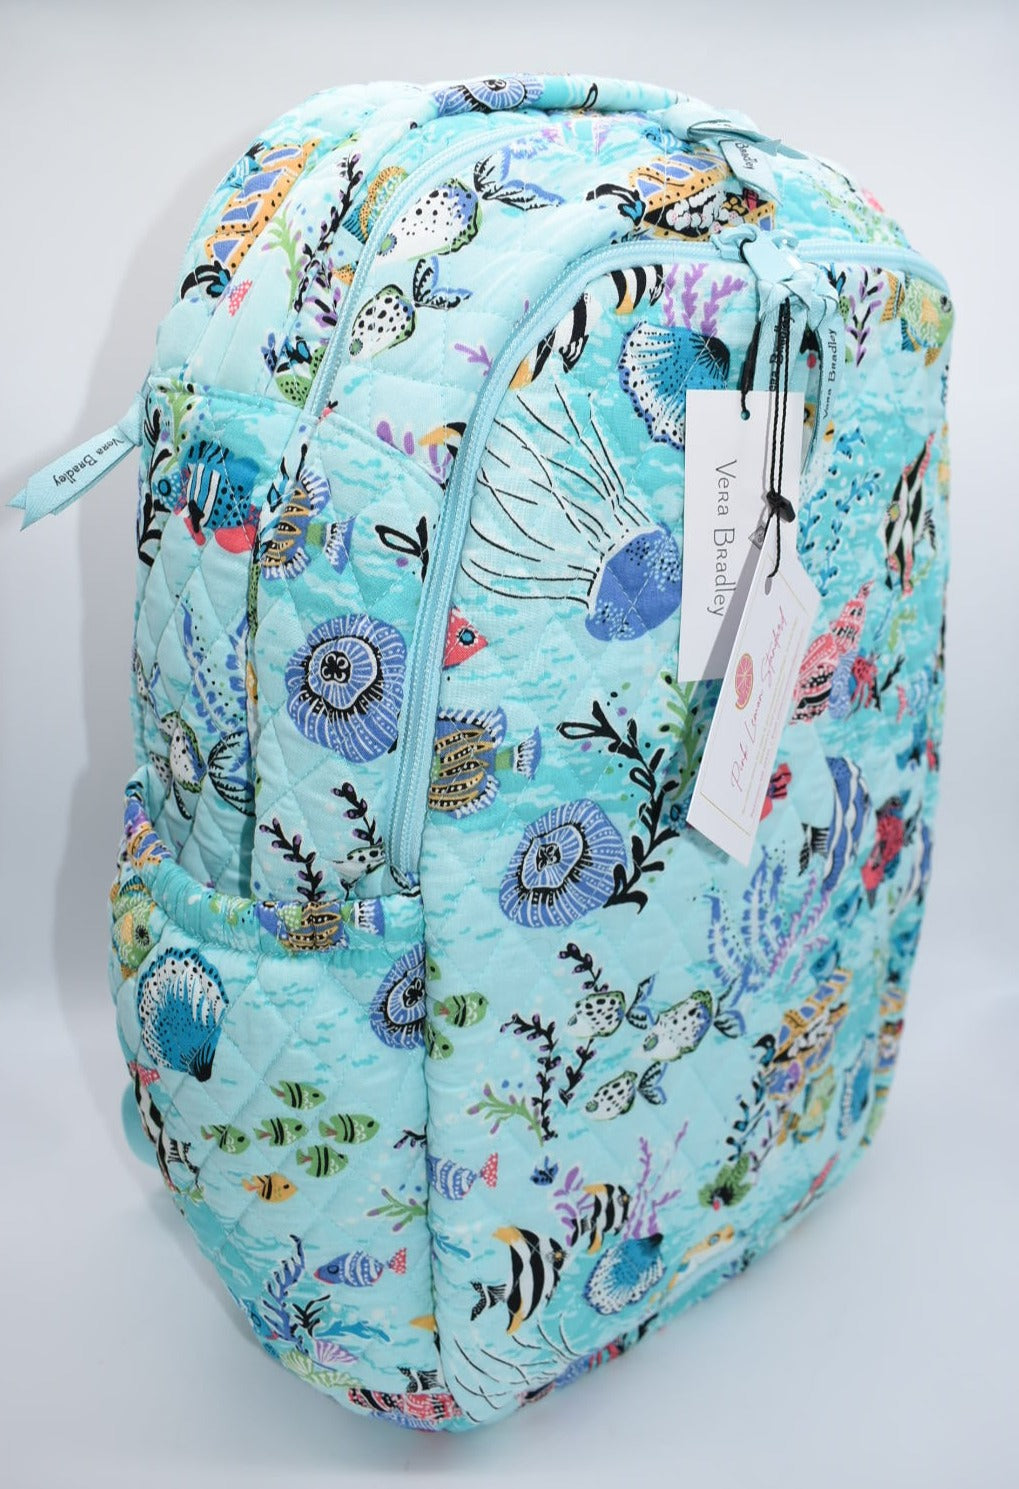 Vera Bradley Travel Backpack in "Antilles Treasure" Pattern